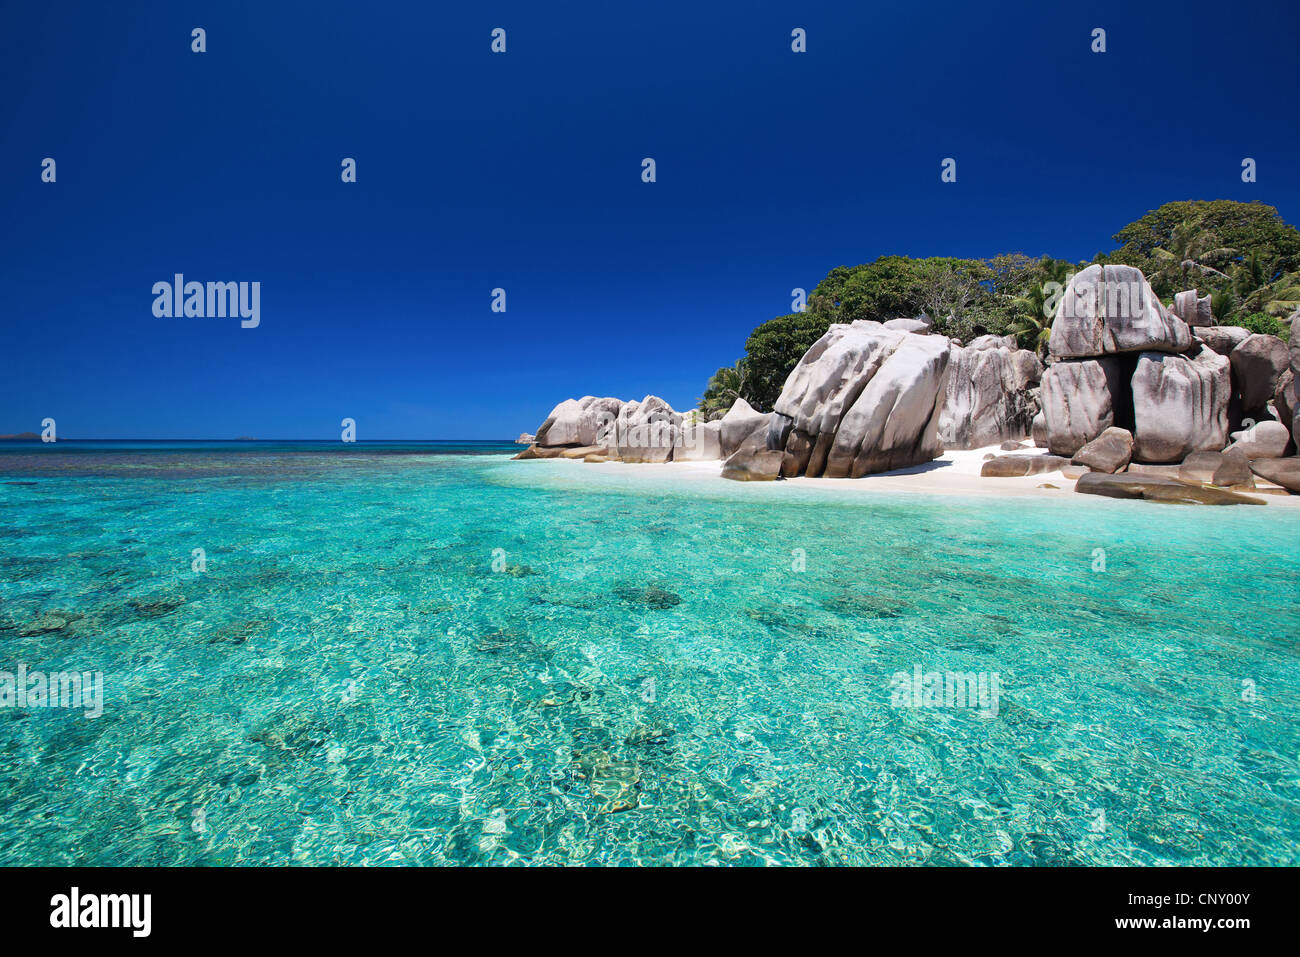 Plage tropicale avec sable blanc, eau turquoise et les roches de granit, Seychelles Banque D'Images